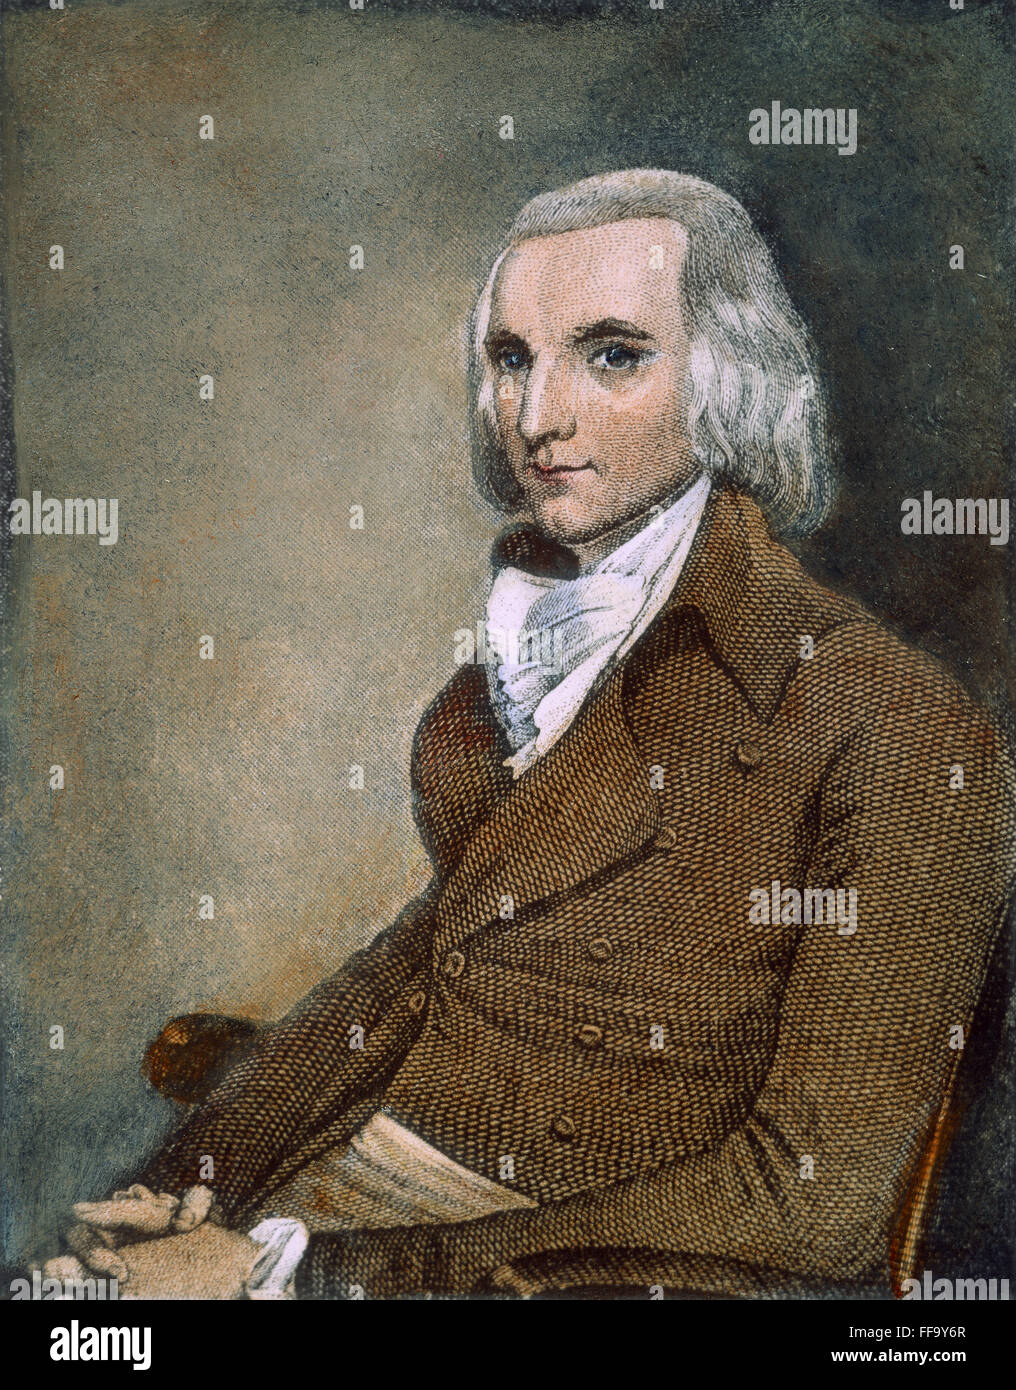 JOHN JACOB ASTOR (1763-1848). /nAmerican Pelzhändler und Finanzier. Amerikanische Stahlstich, 19. Jahrhundert. Stockfoto